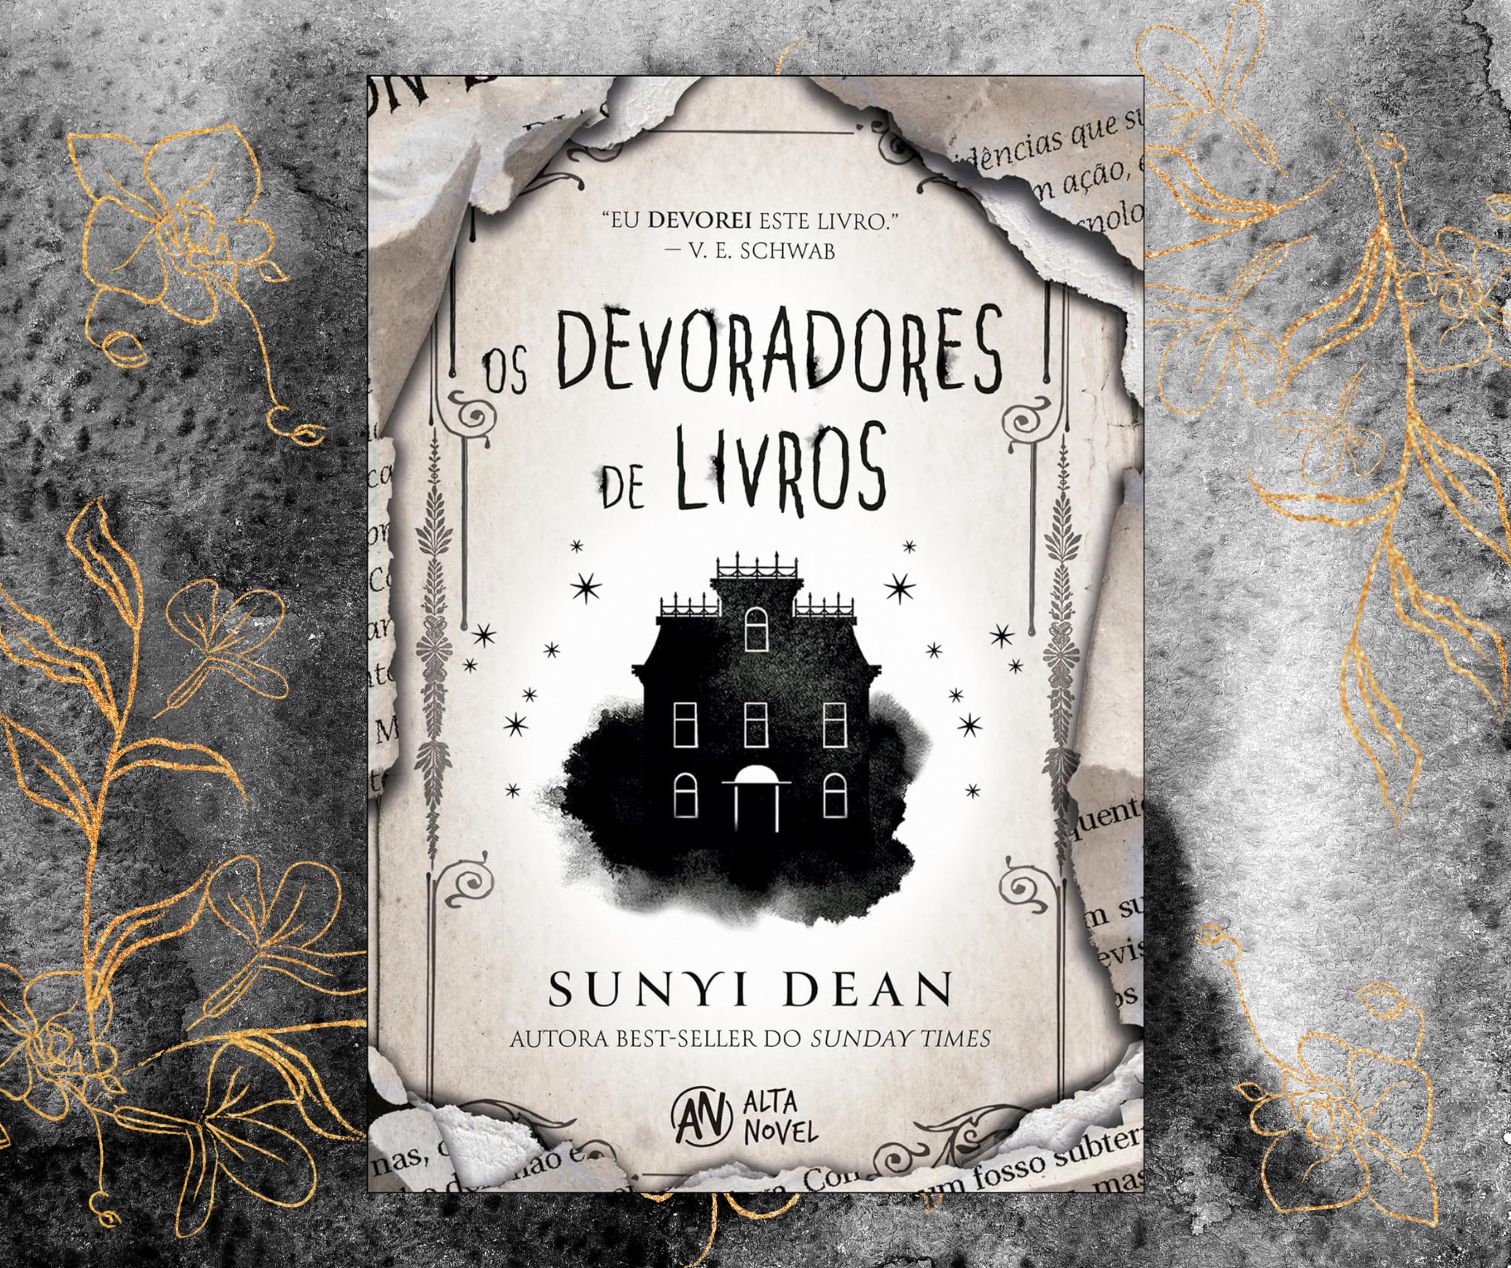 Resenha: Os devoradores de livros, de Sunyi Dean